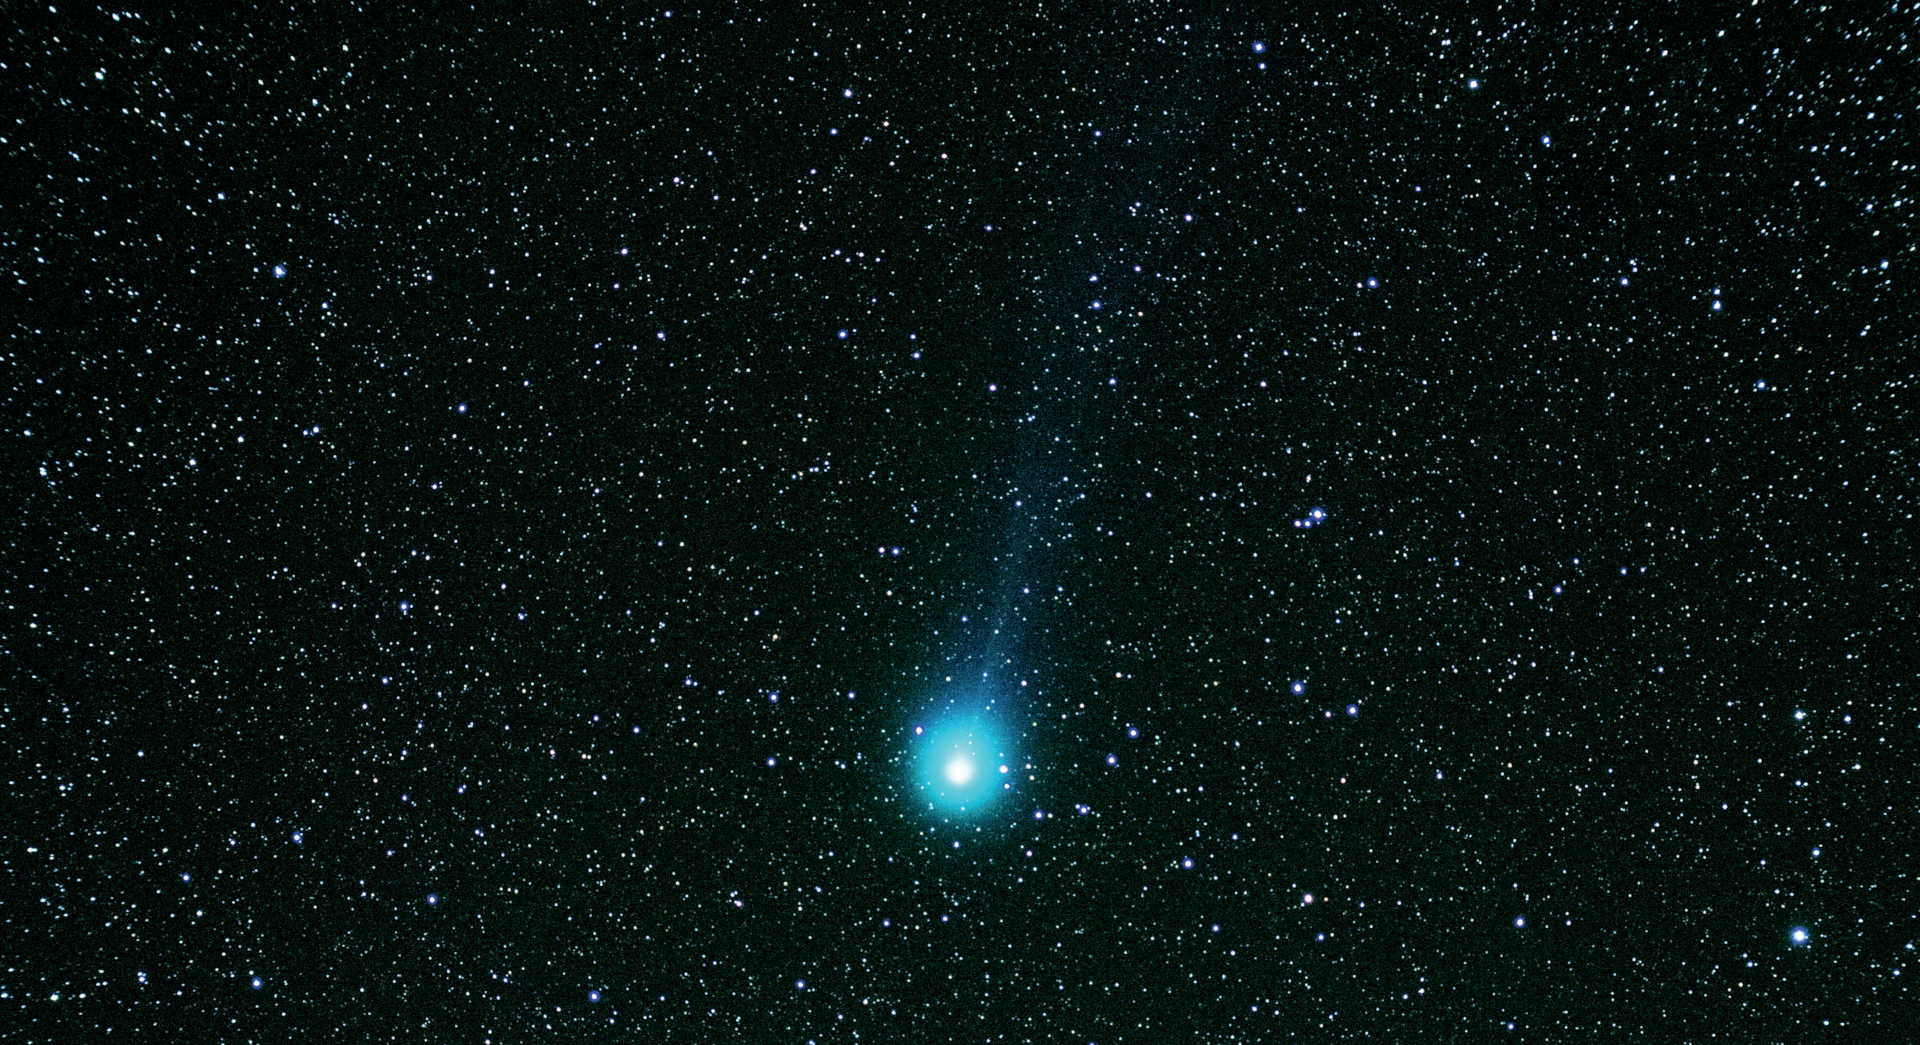 Cometa C/2014 Q2 (Lovejoy) cu un telescop refractor cu distanță focală scurtă. Imaginea compusă a fost realizată la data de 7 martie 2015 cu un aparat de fotografiat DSLR Canon 550D montat pe un telescop refractor Apo cu o distanță focală de 355 mm și o apertură de 60 mm. Pentru a realiza această imagine compusă au fost combinate cinci fotografii cu un timp de expunere de 120 de secunde fiecare (timp total de expunere: 10 minute), folosind cu DeepSkyStacker și Photoshop. U. Dittler